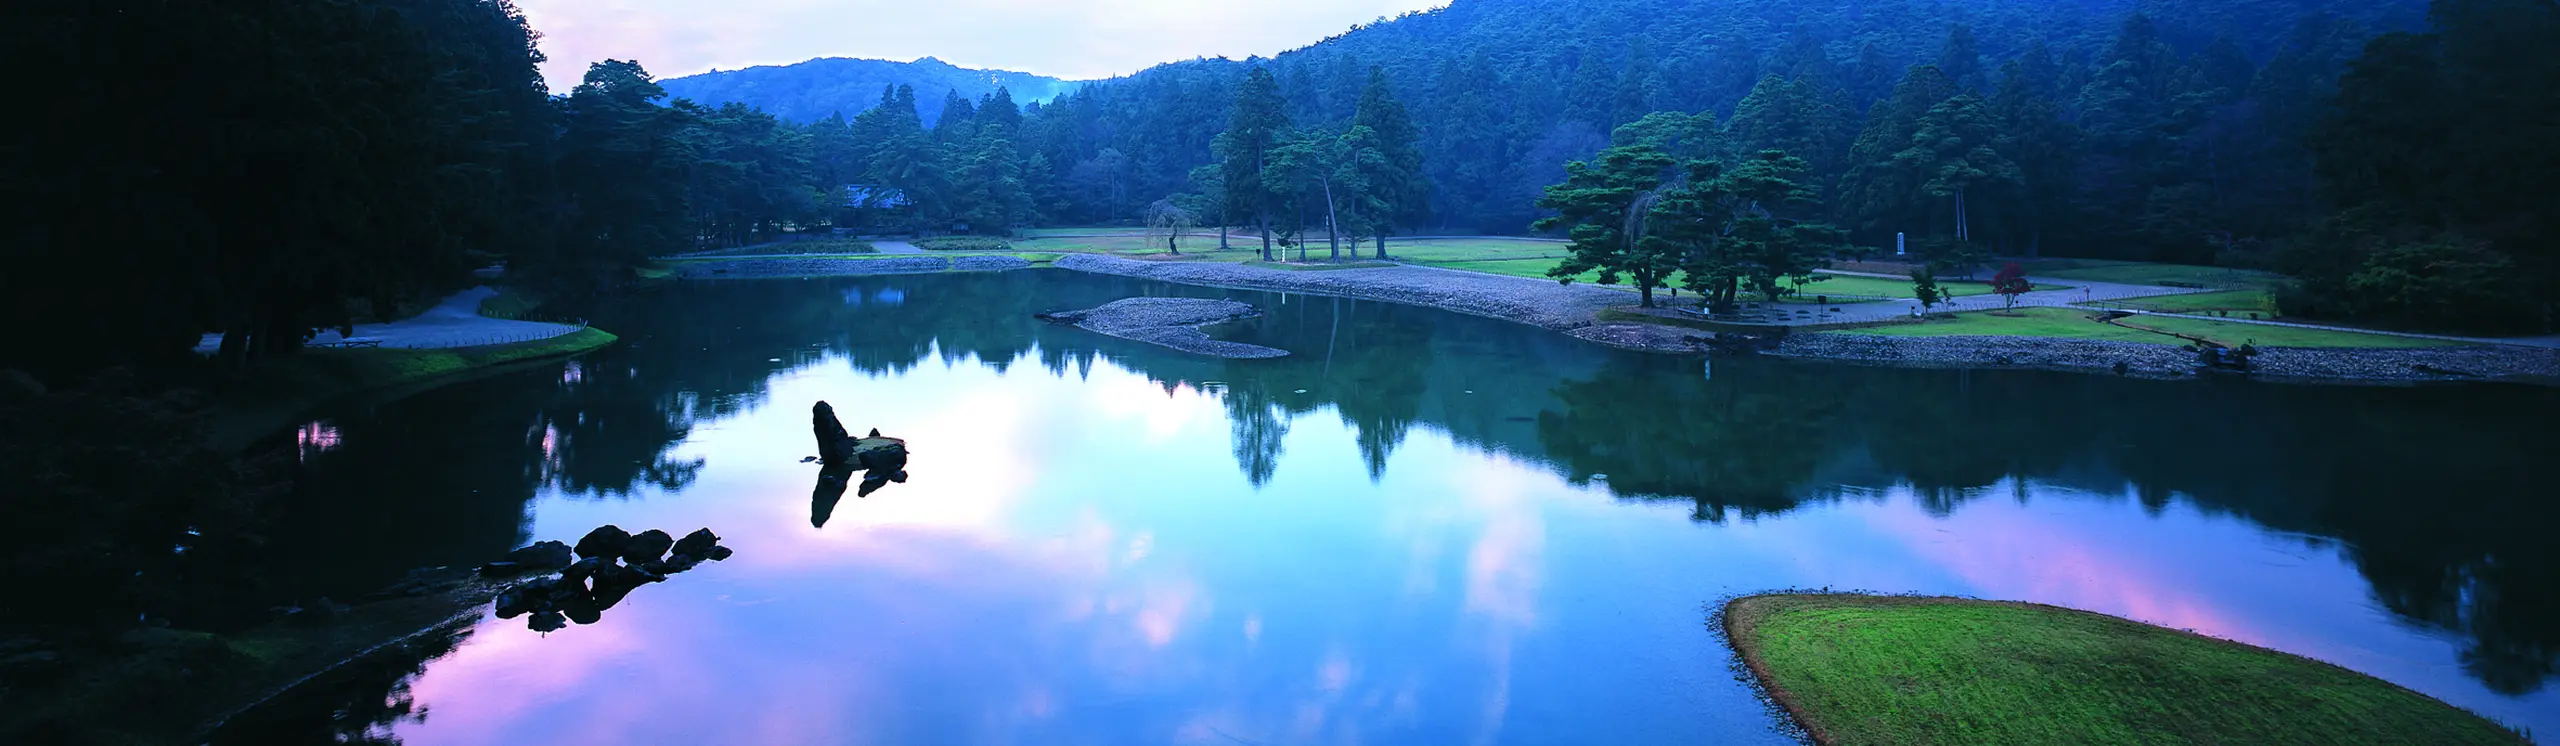 Hiraizumi – Temples, jardins et sites archéologiques représentant la Terre Pure bouddhiste